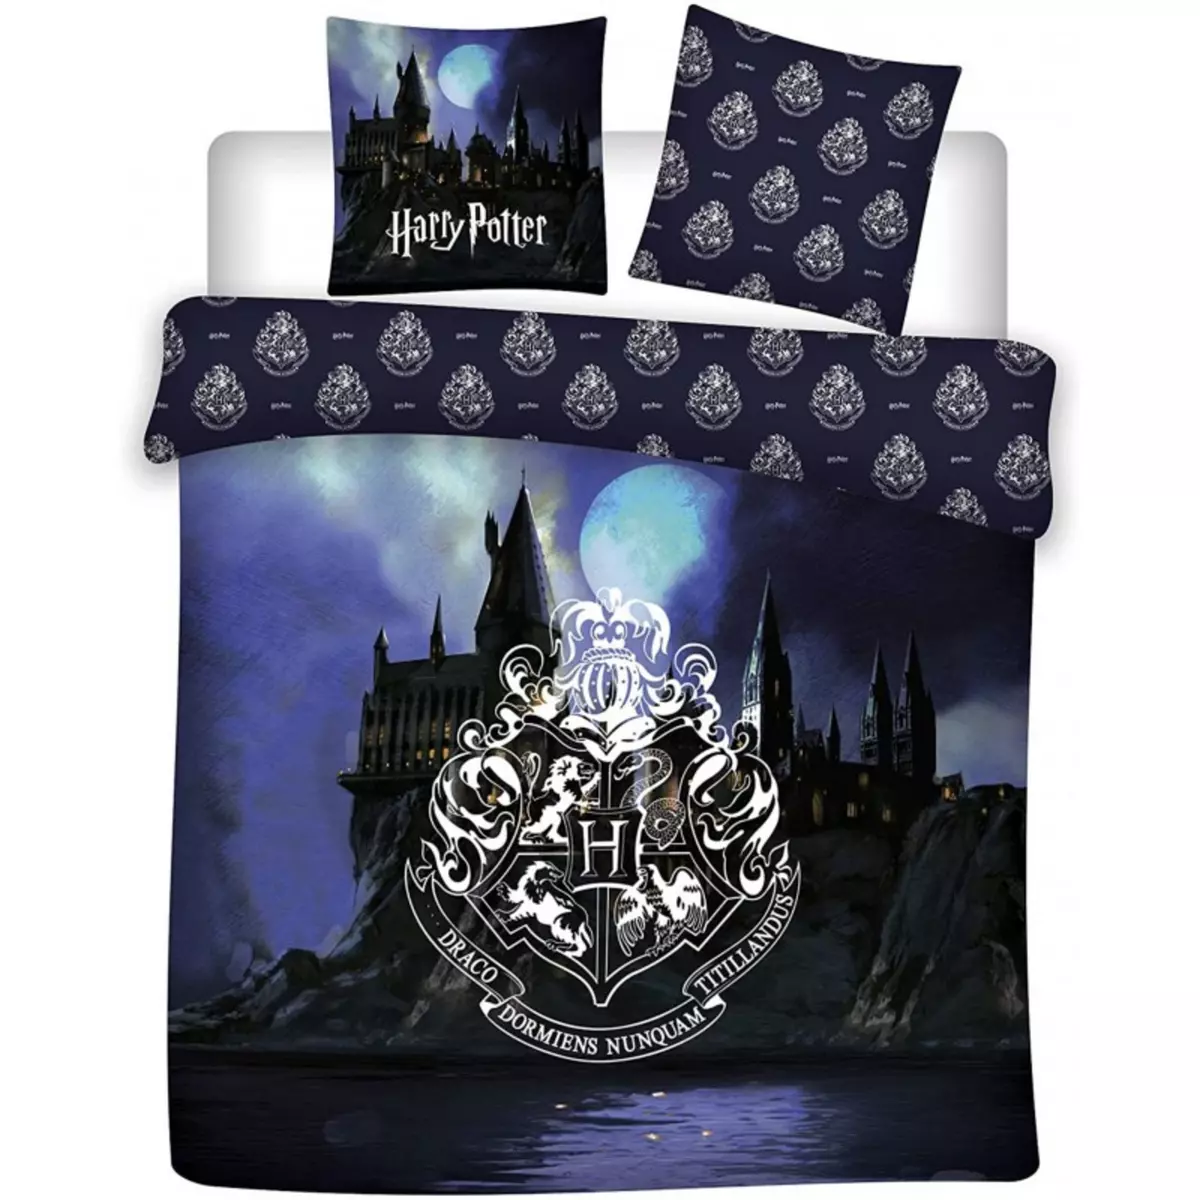 HARRY POTTER Harry Potter - Parure de lit double coton Gryffondor - Housse de Couette 220x240 cm Taies 65x65 cm